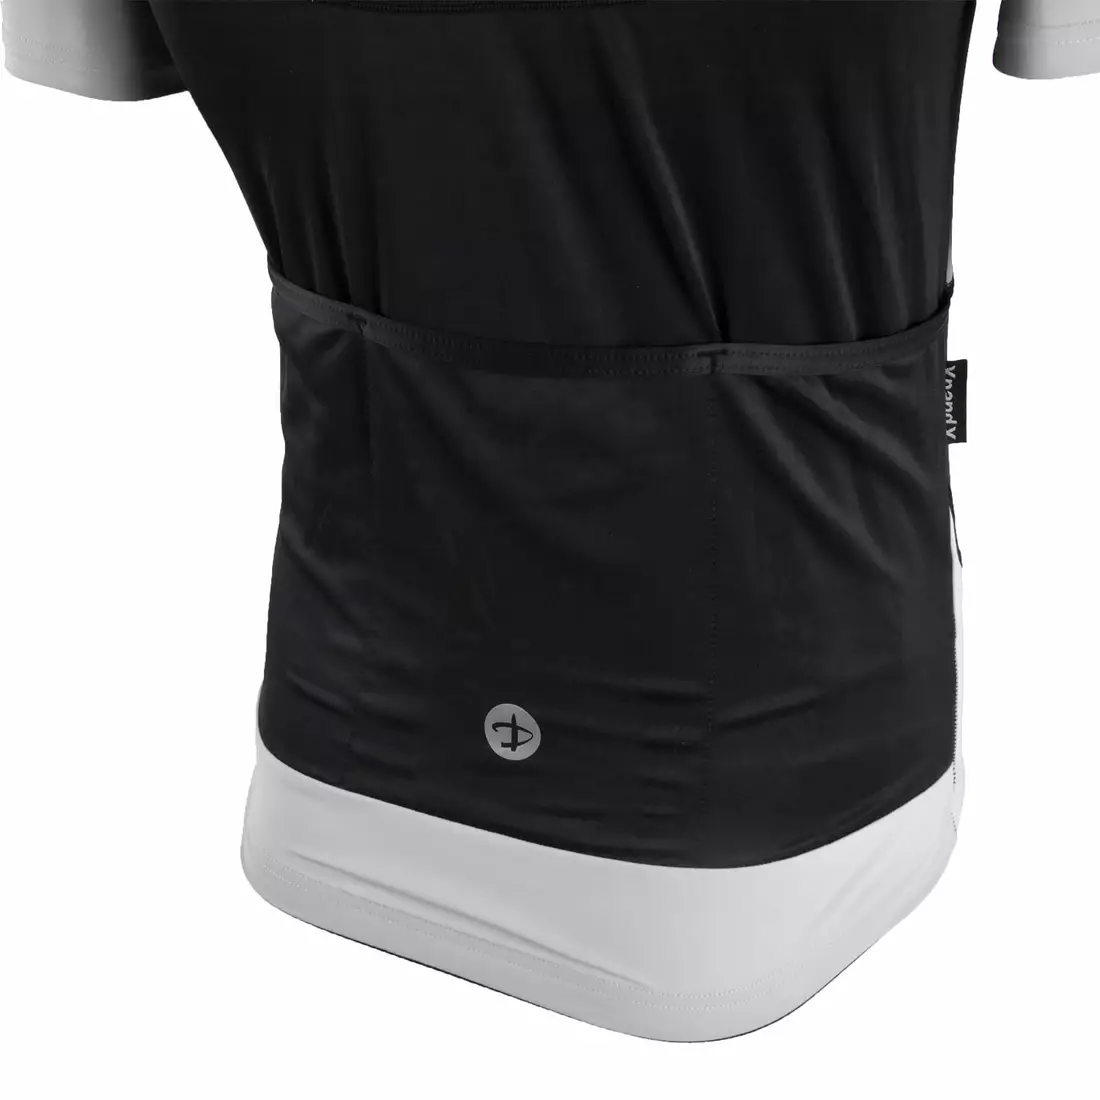 DEKO BURAQ pánsky cyklistický dres, krátky rukáv čierno-biely